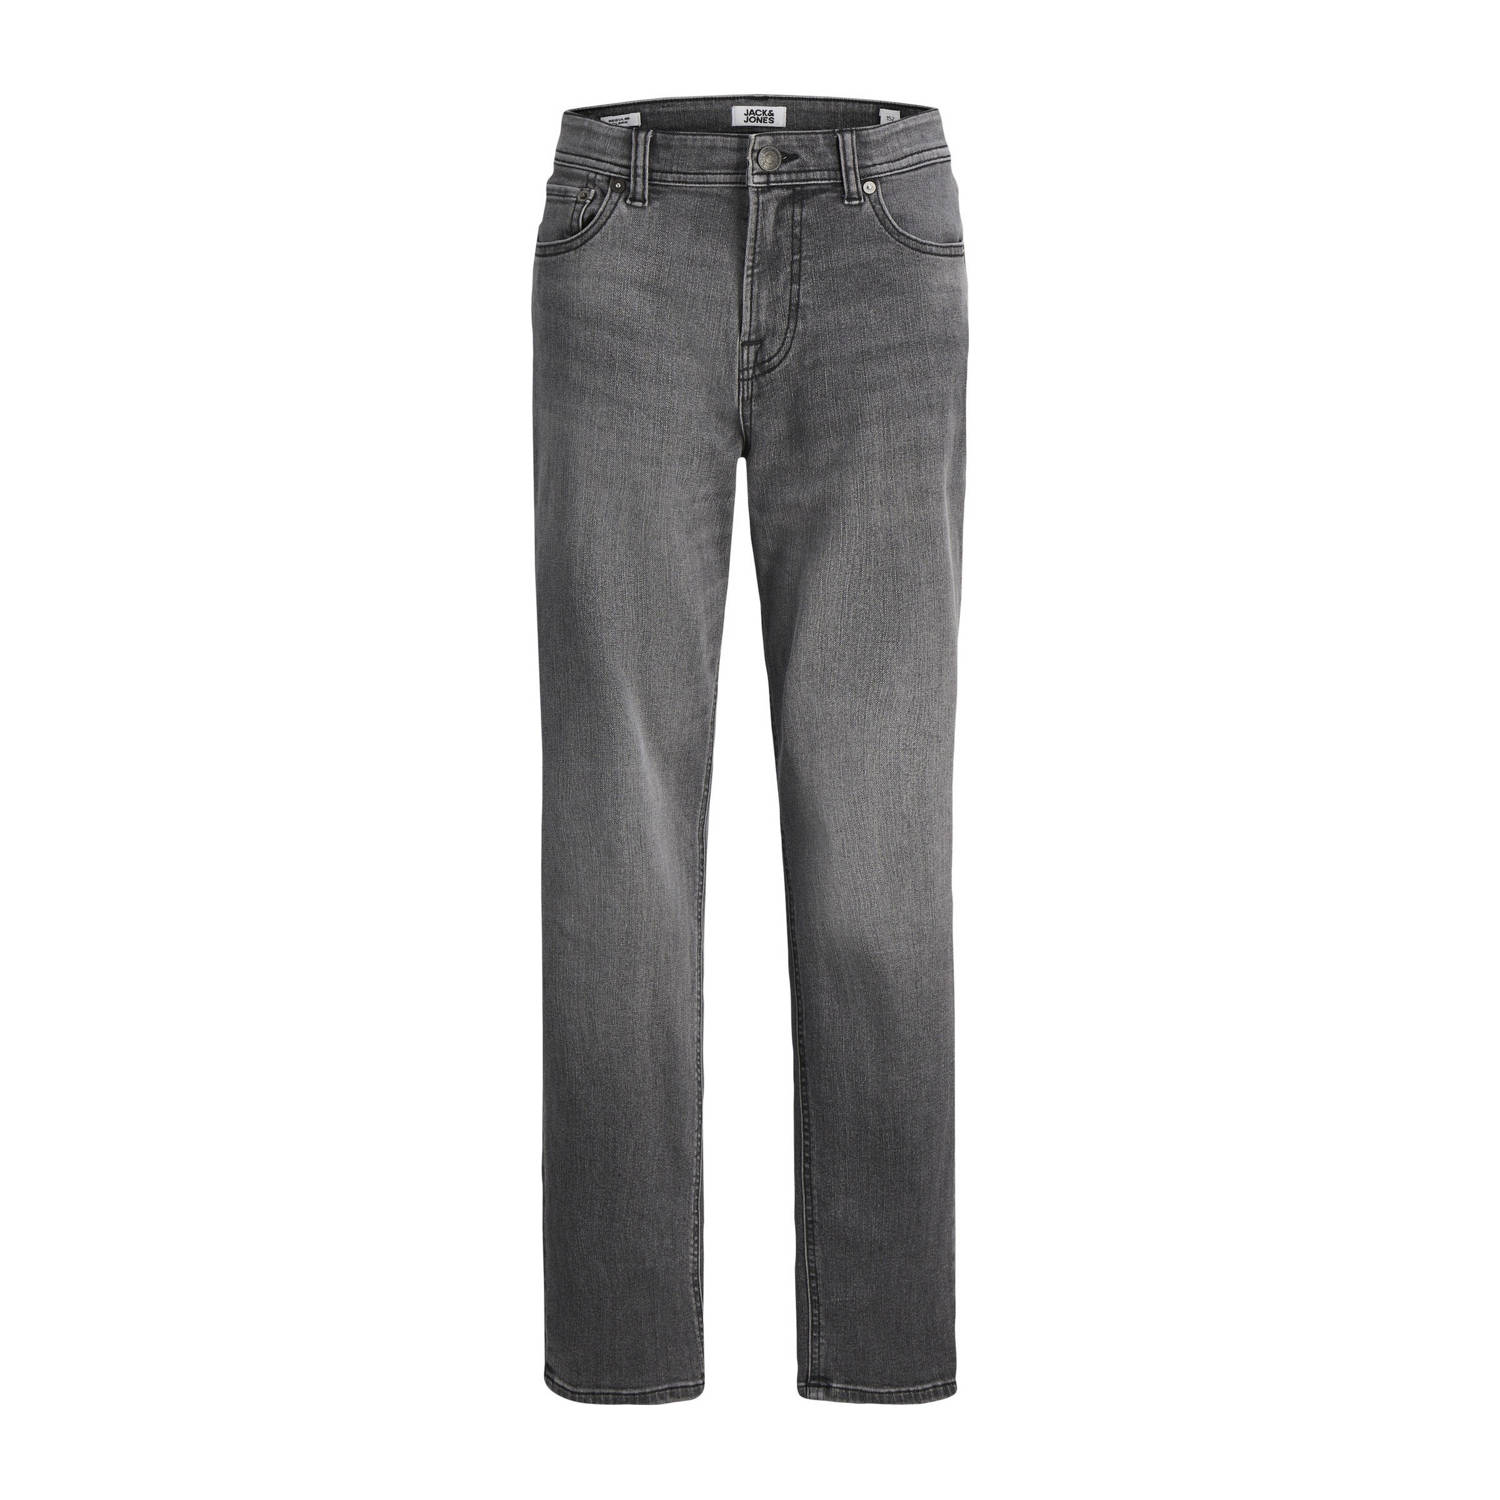 Jack & jones JUNIOR regular fit jeans JJICLARK grey denim Grijs Jongens Stretchdenim 128